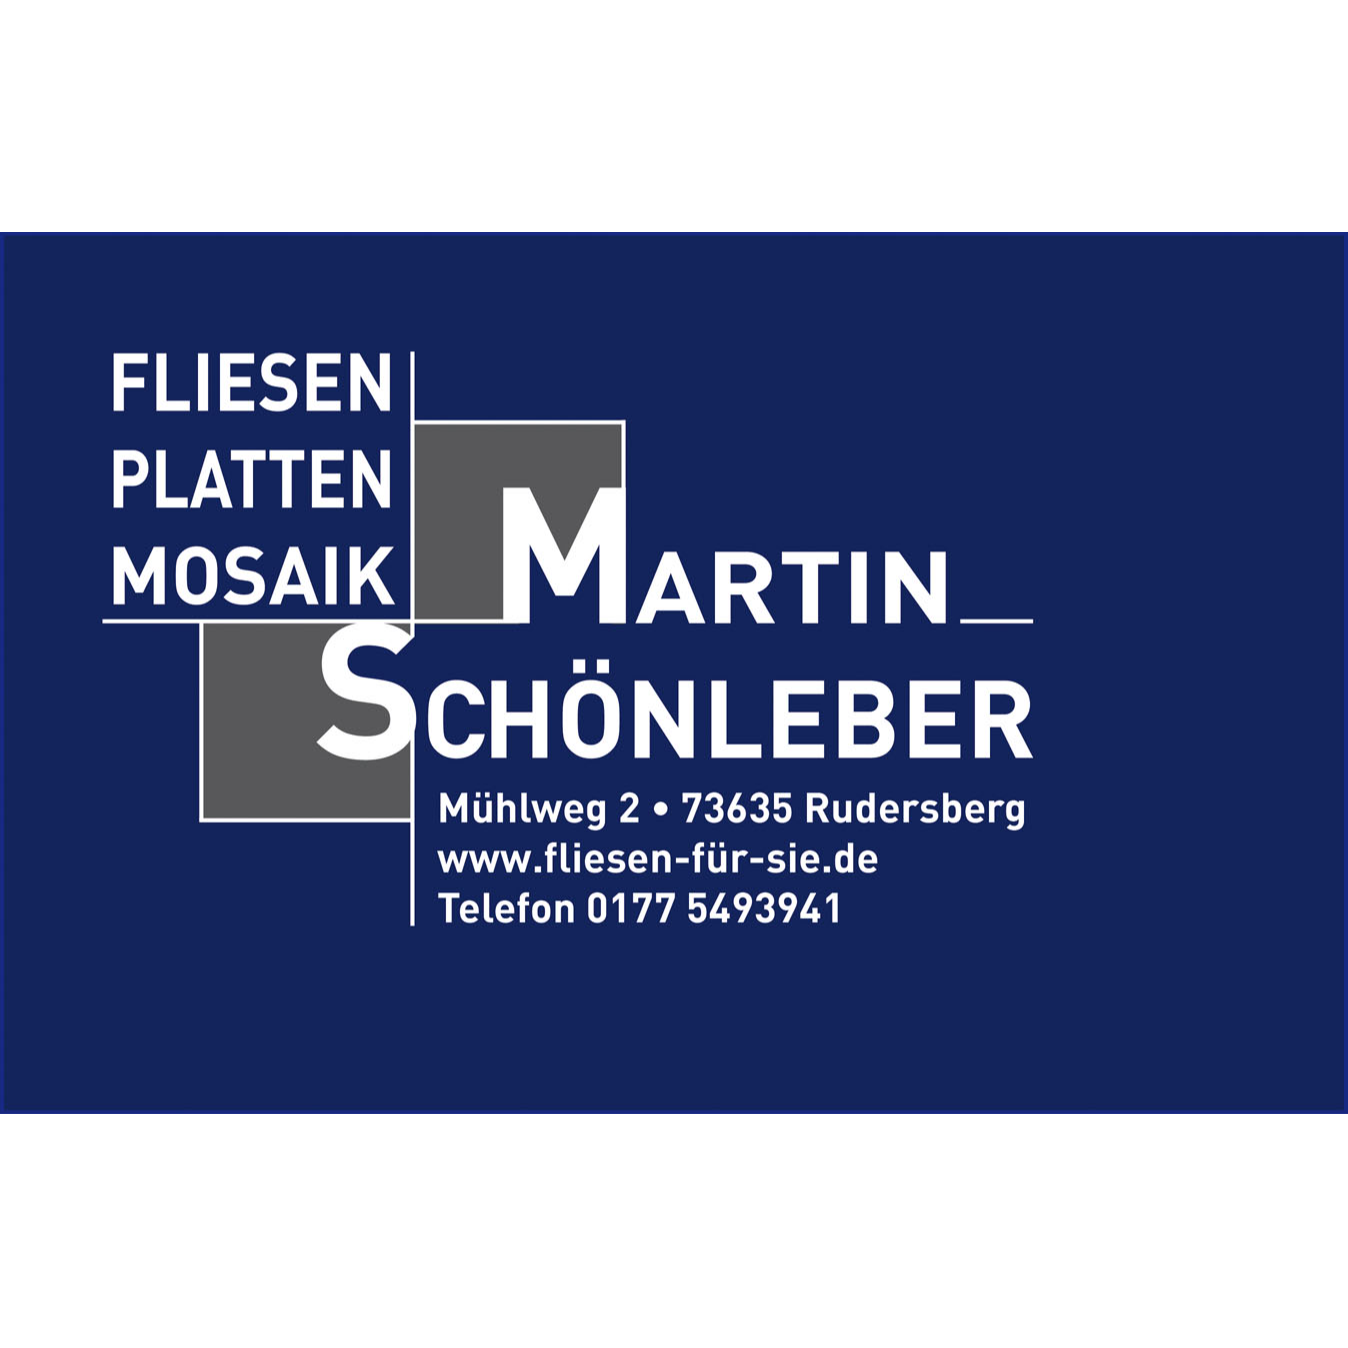 Martin Schönleber Fliesen- und Plattenleger in Rudersberg in Württemberg - Logo